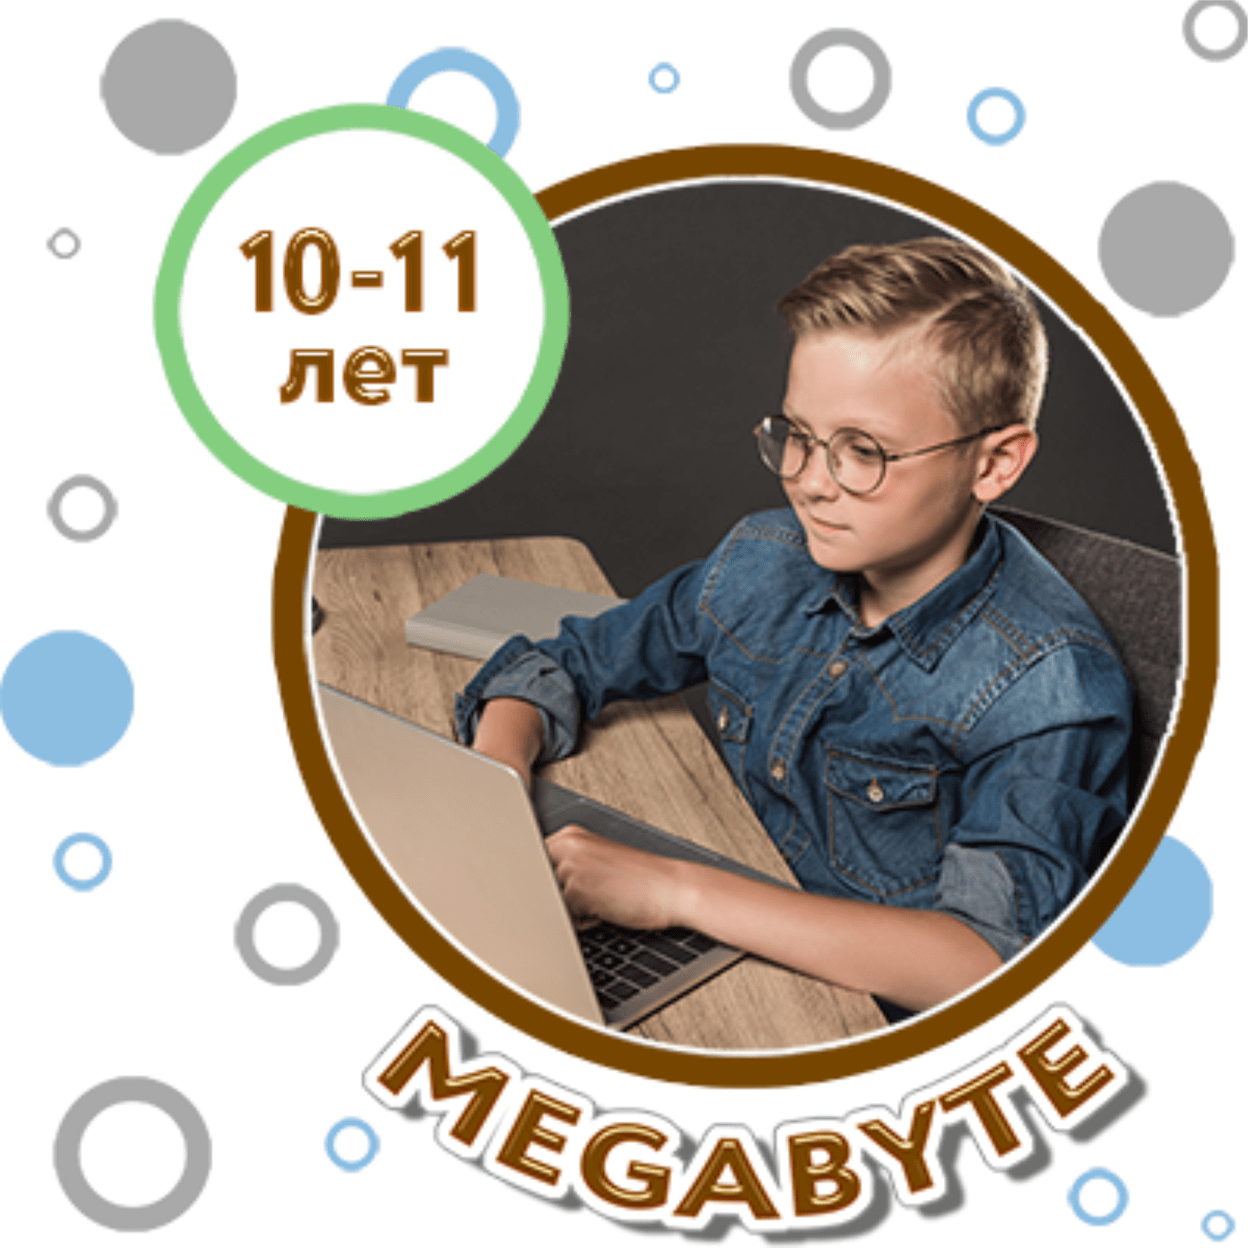 Купить MEGABYTE 11-12 лет